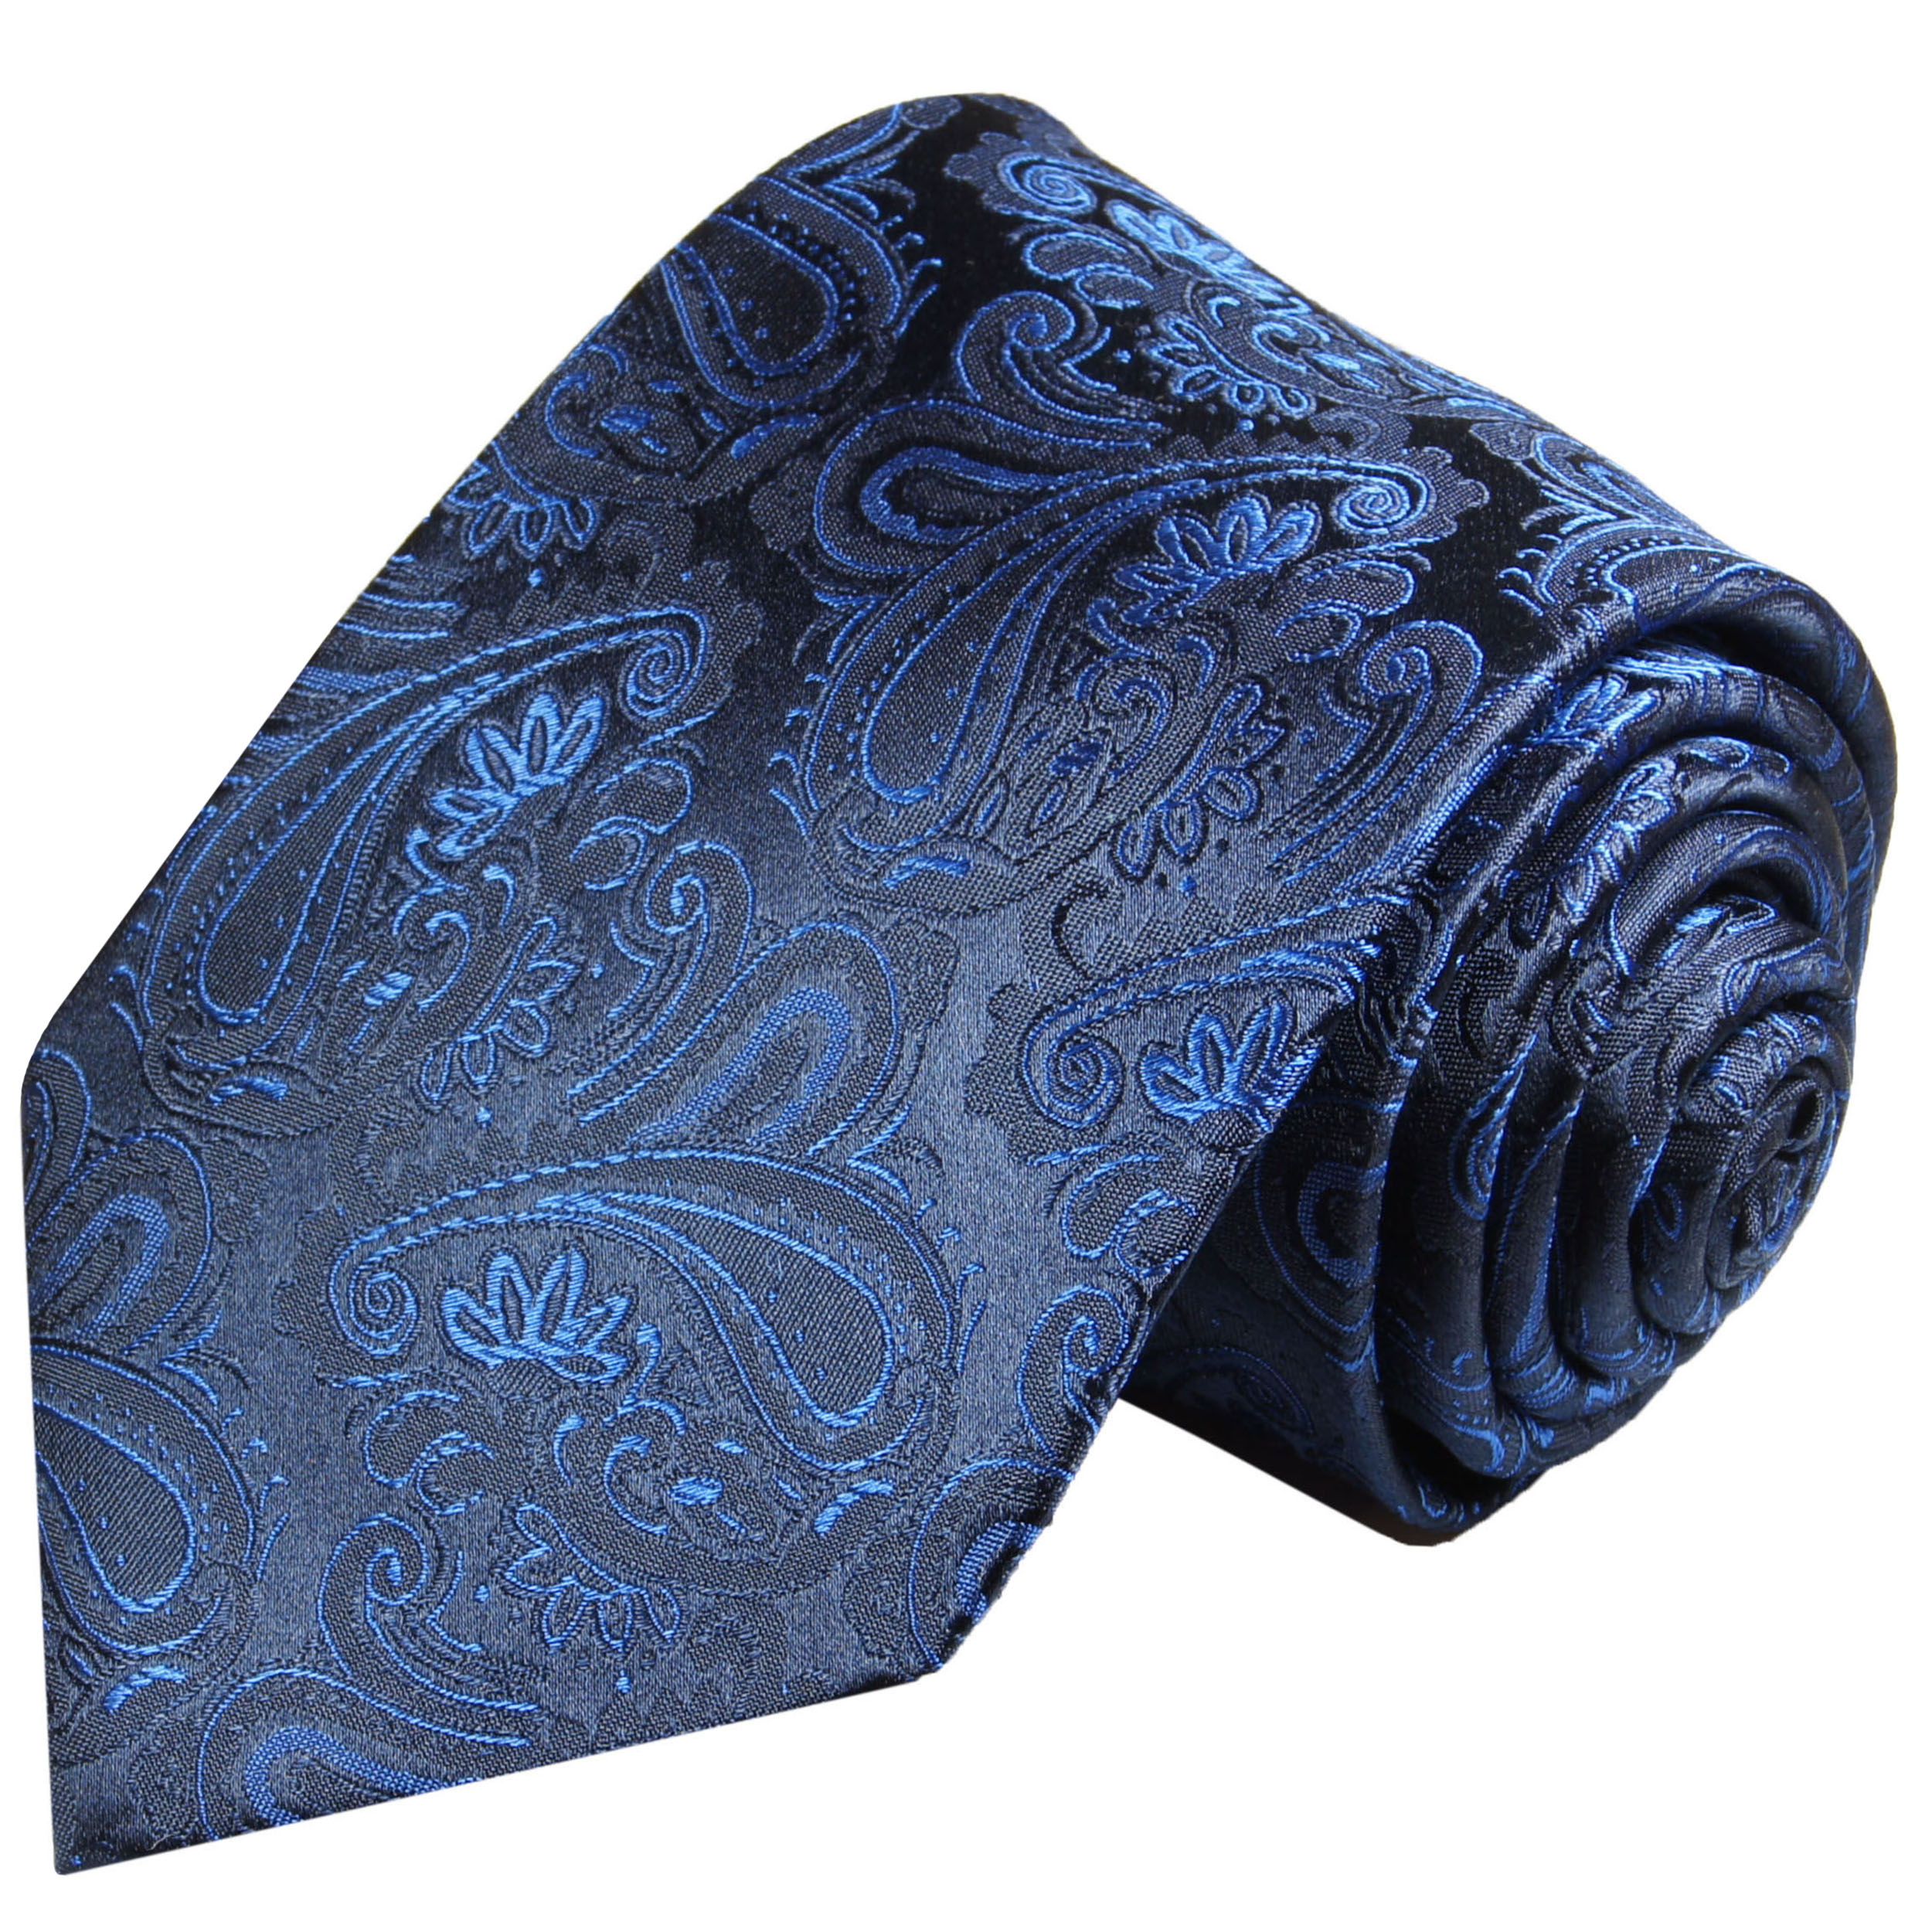 BESTELLEN JETZT | Krawatte - Shop 518 paisley Malone blau Paul